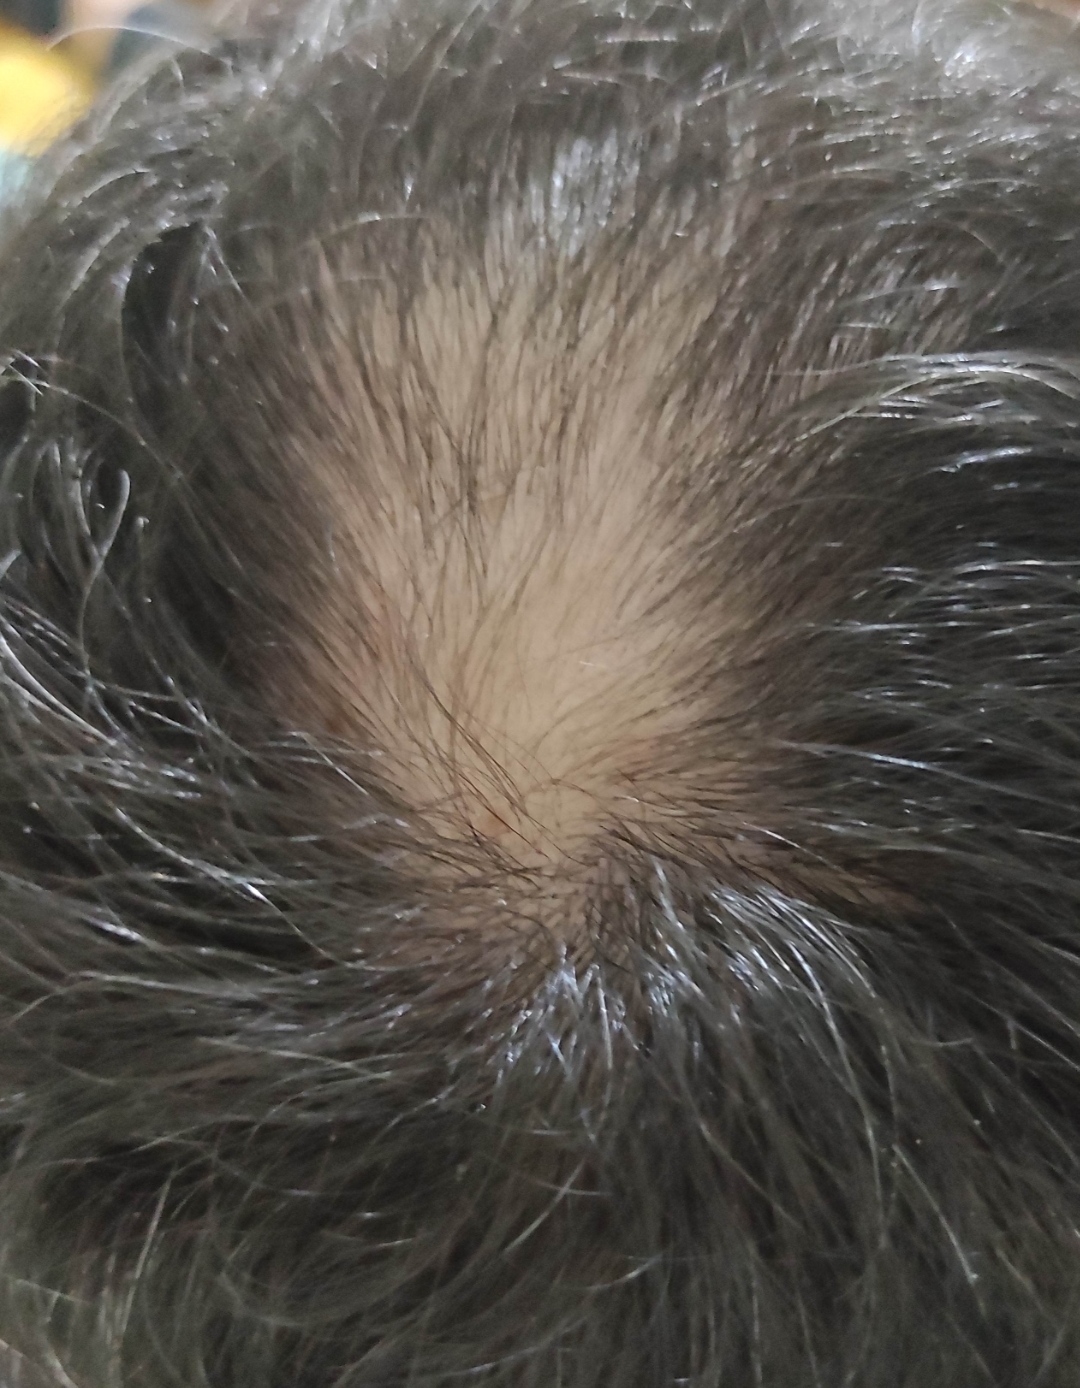 Yanlardan açılan saçlar için çözüm - Saç Tedavisi Forum Saçların Yanlardan Açılması Nasıl Engellenir?